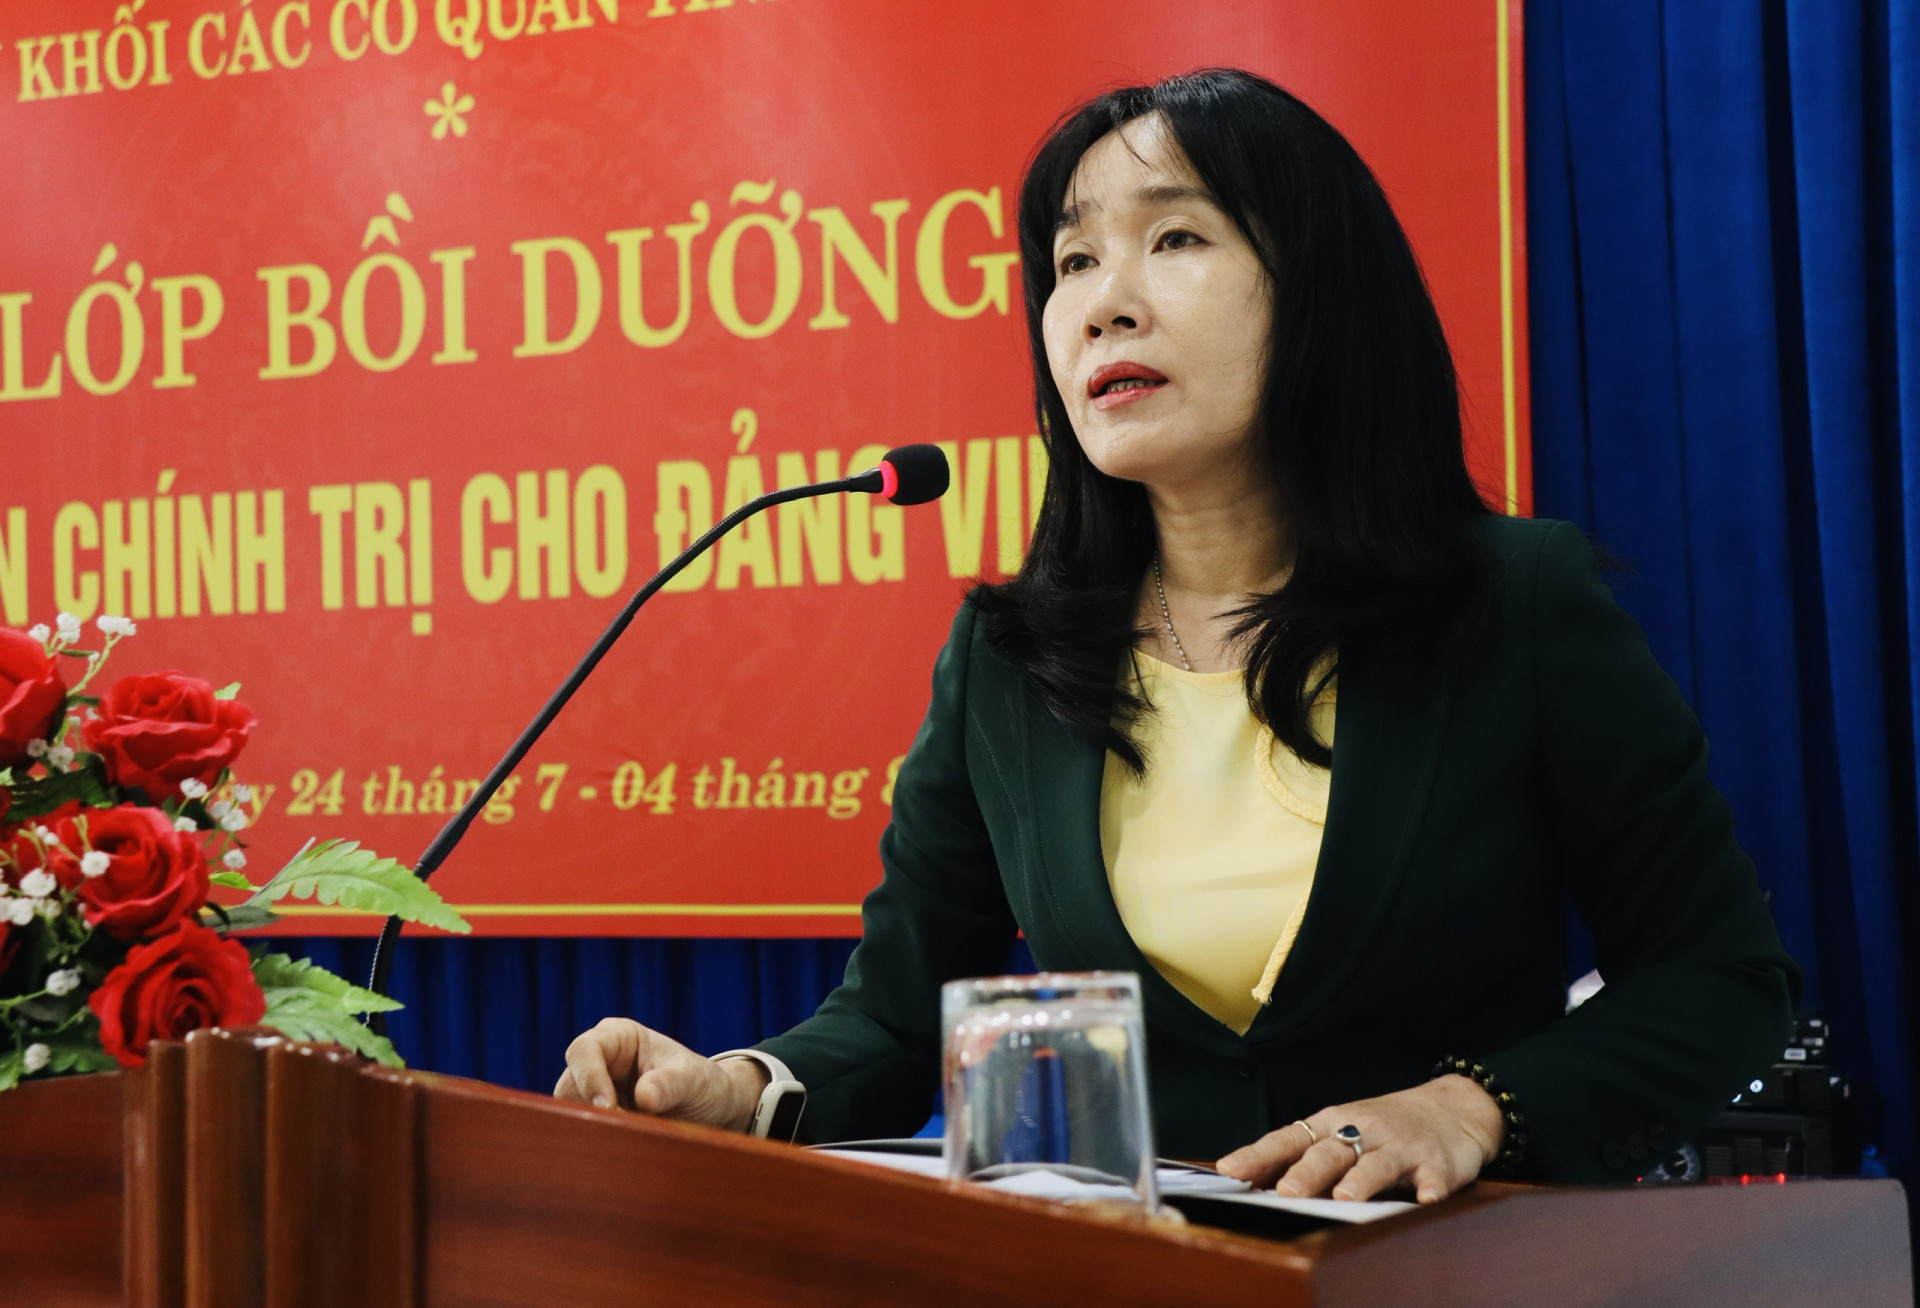 Đồng chí Nguyễn Thị Bích Liên - Phó Bí thư tTường trực Đảng ủy Khối phát biểu khai mạc